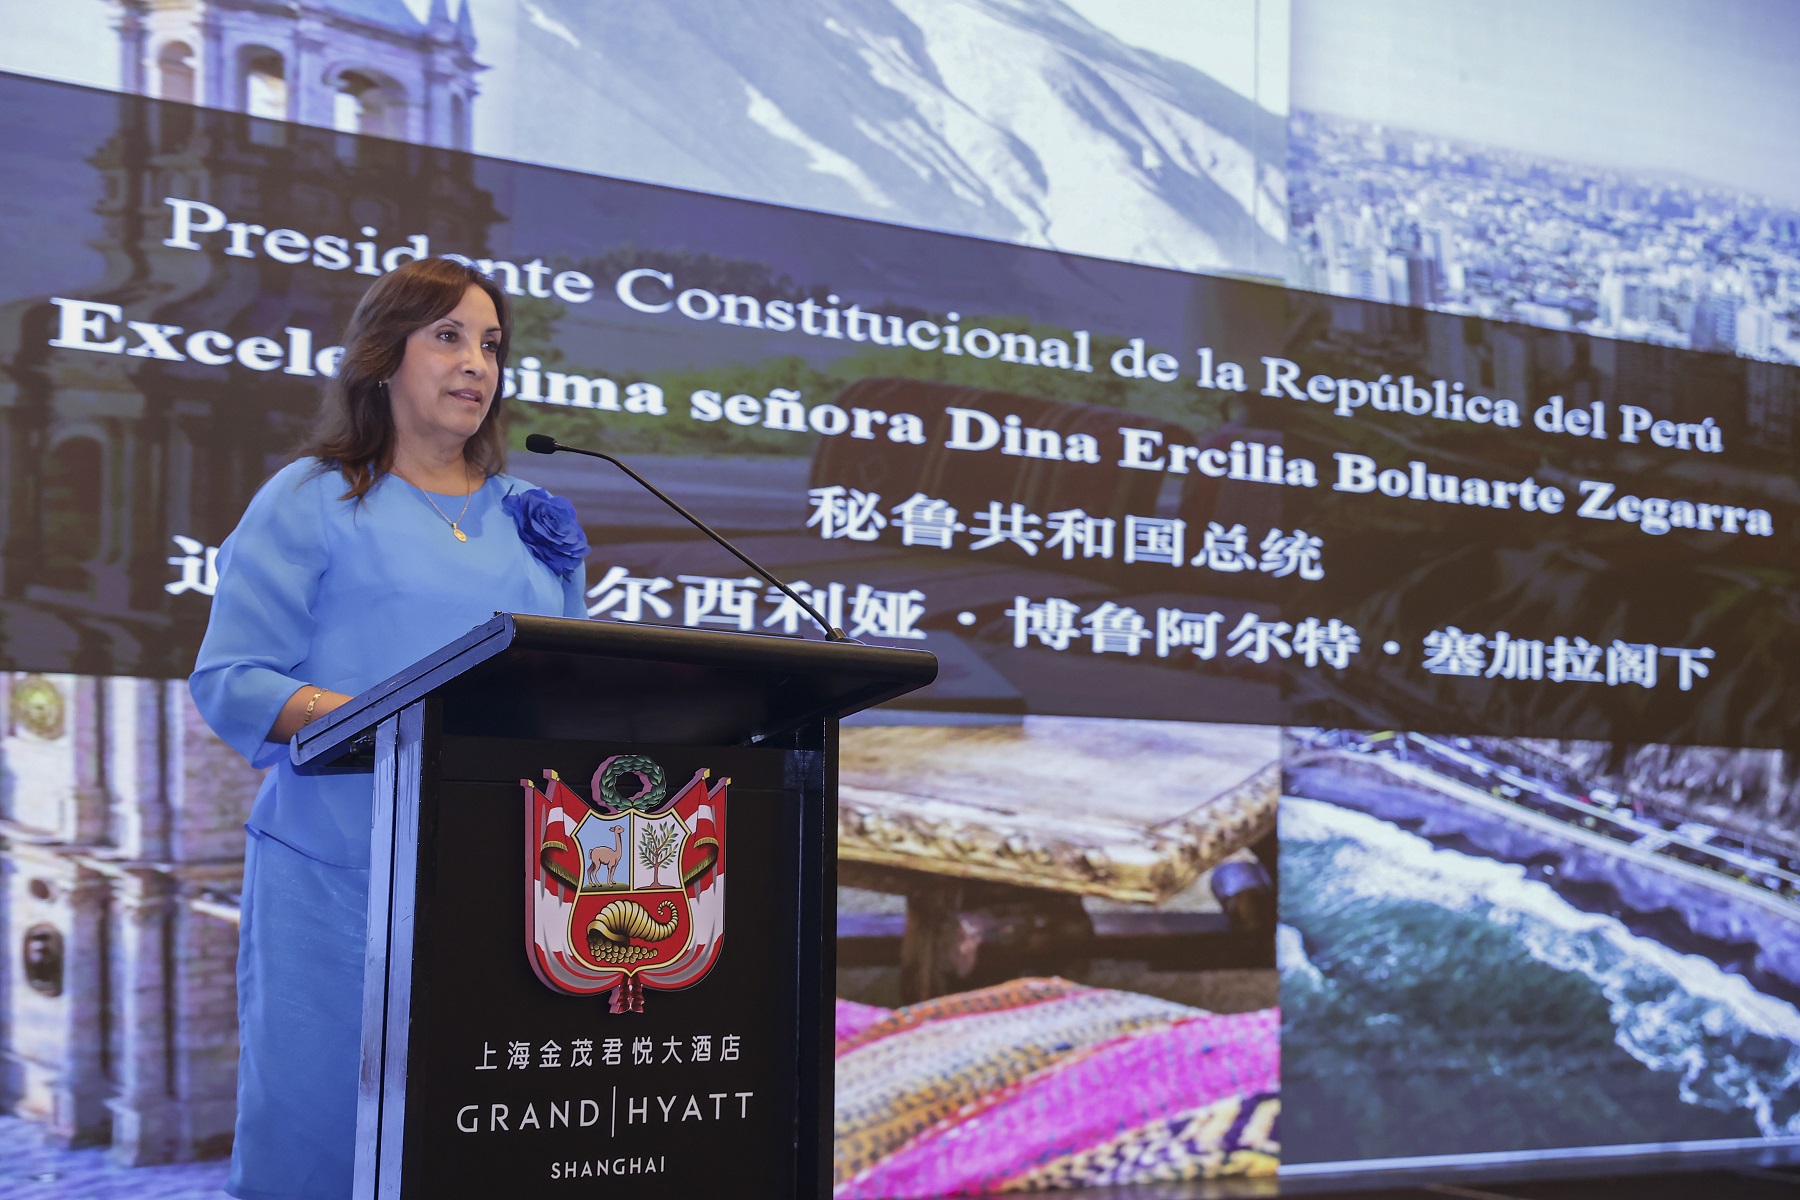 Presidenta Dina Boluarte Zegarra participó como expositora en la Conferencia Magistral "Oportunidades de Inversión de Perú", en Shanghái – China.